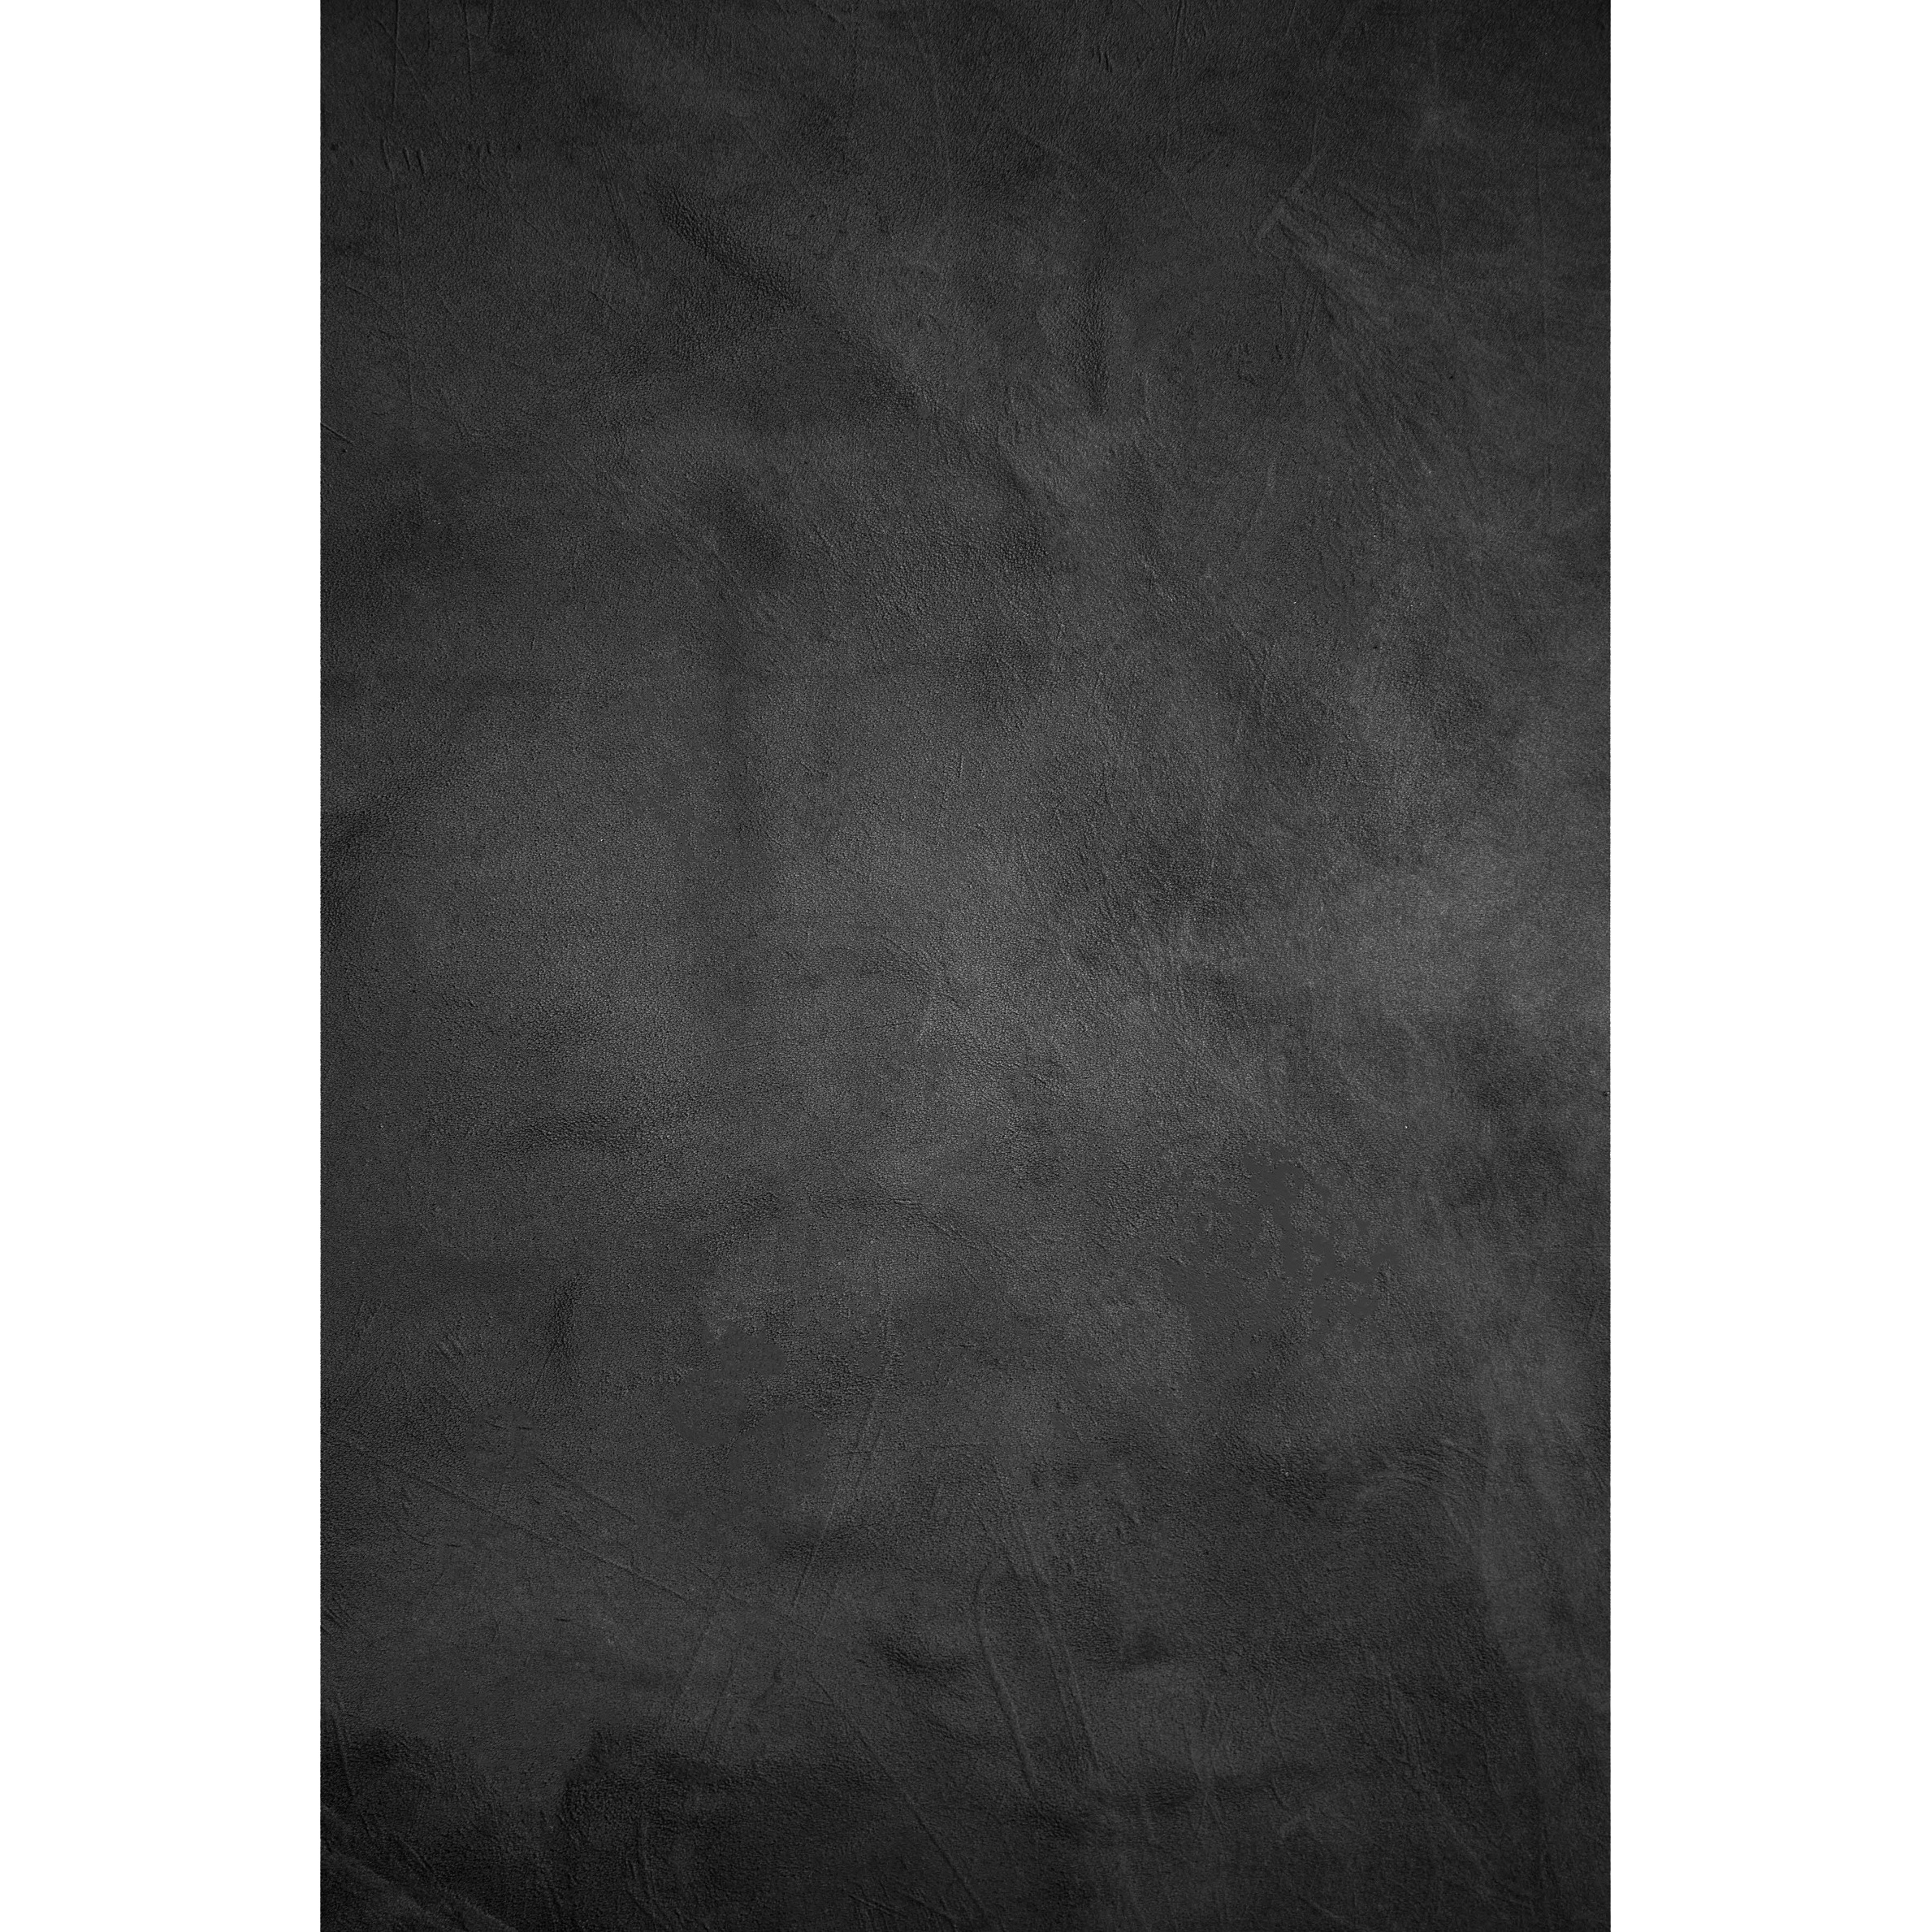 BRESSER Arrière-plan en tissu avec motif photographique 80 x 120 cm - Noir